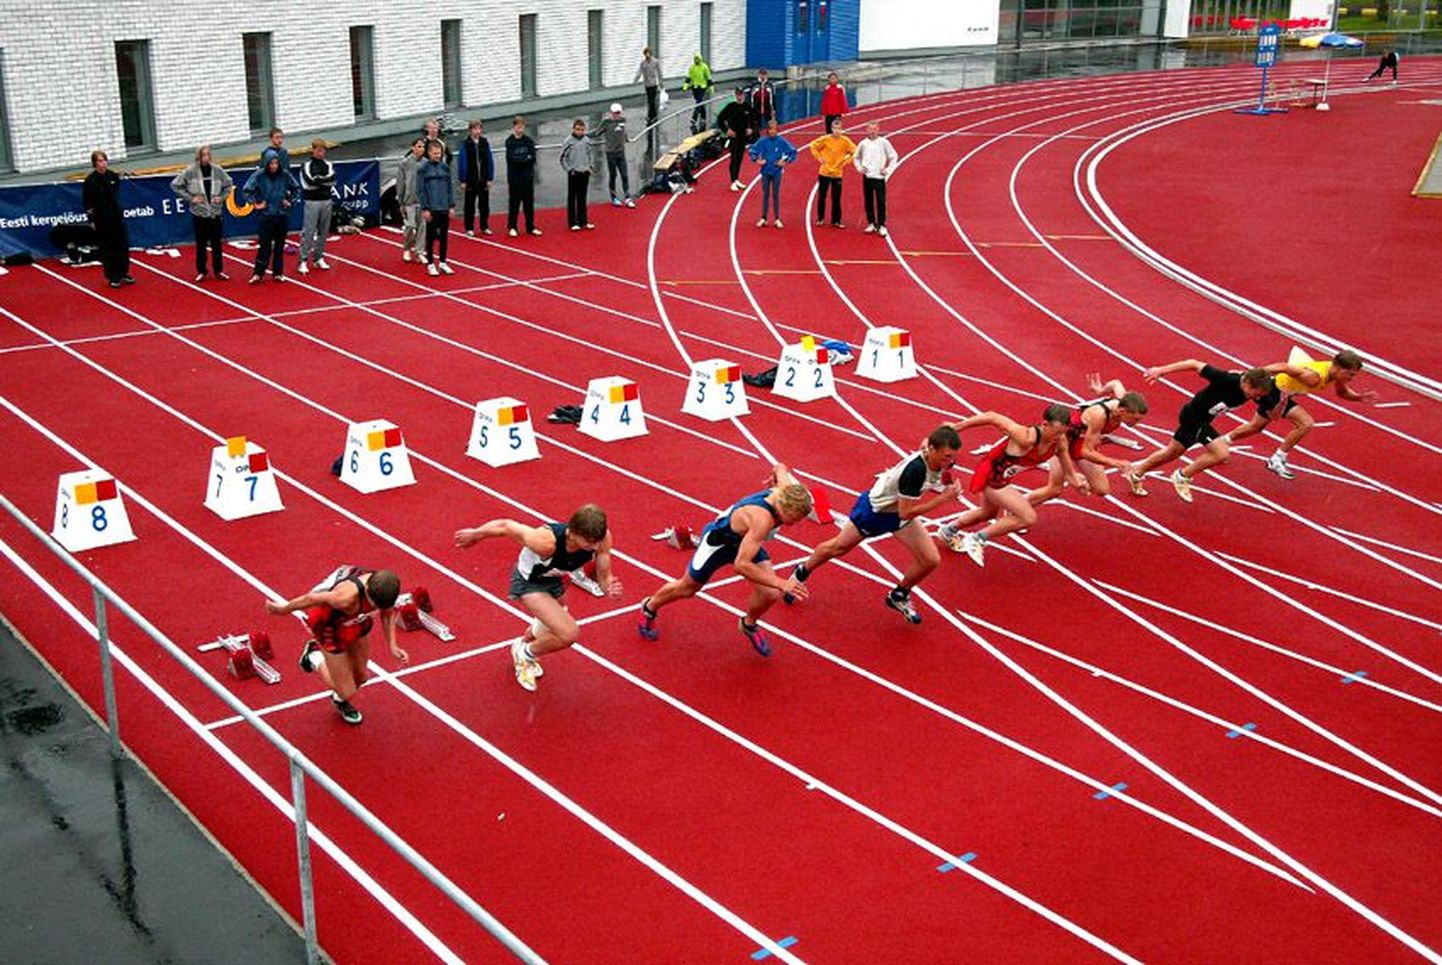 Renoveeritud Rakvere staadionil kuulus avastardi au Eesti meistrivõistlustel osalevatele B vanuseklassi kümnevõistlejatele, kes jooksid uudse kattega rajal võidu 100 meetrit.